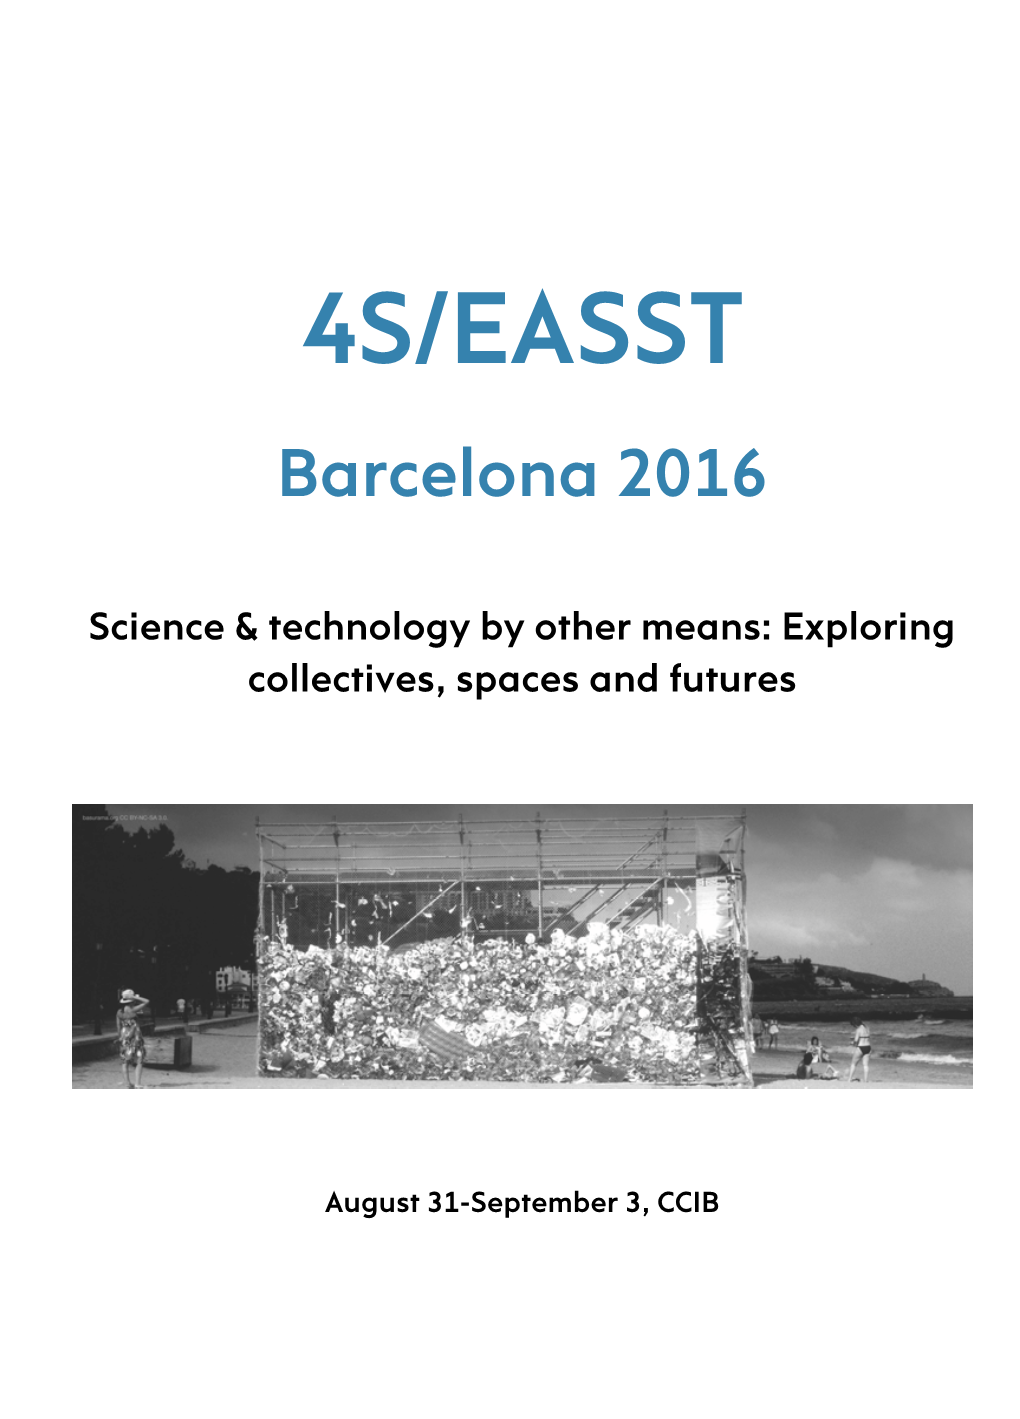 4S/EASST Barcelona 2016